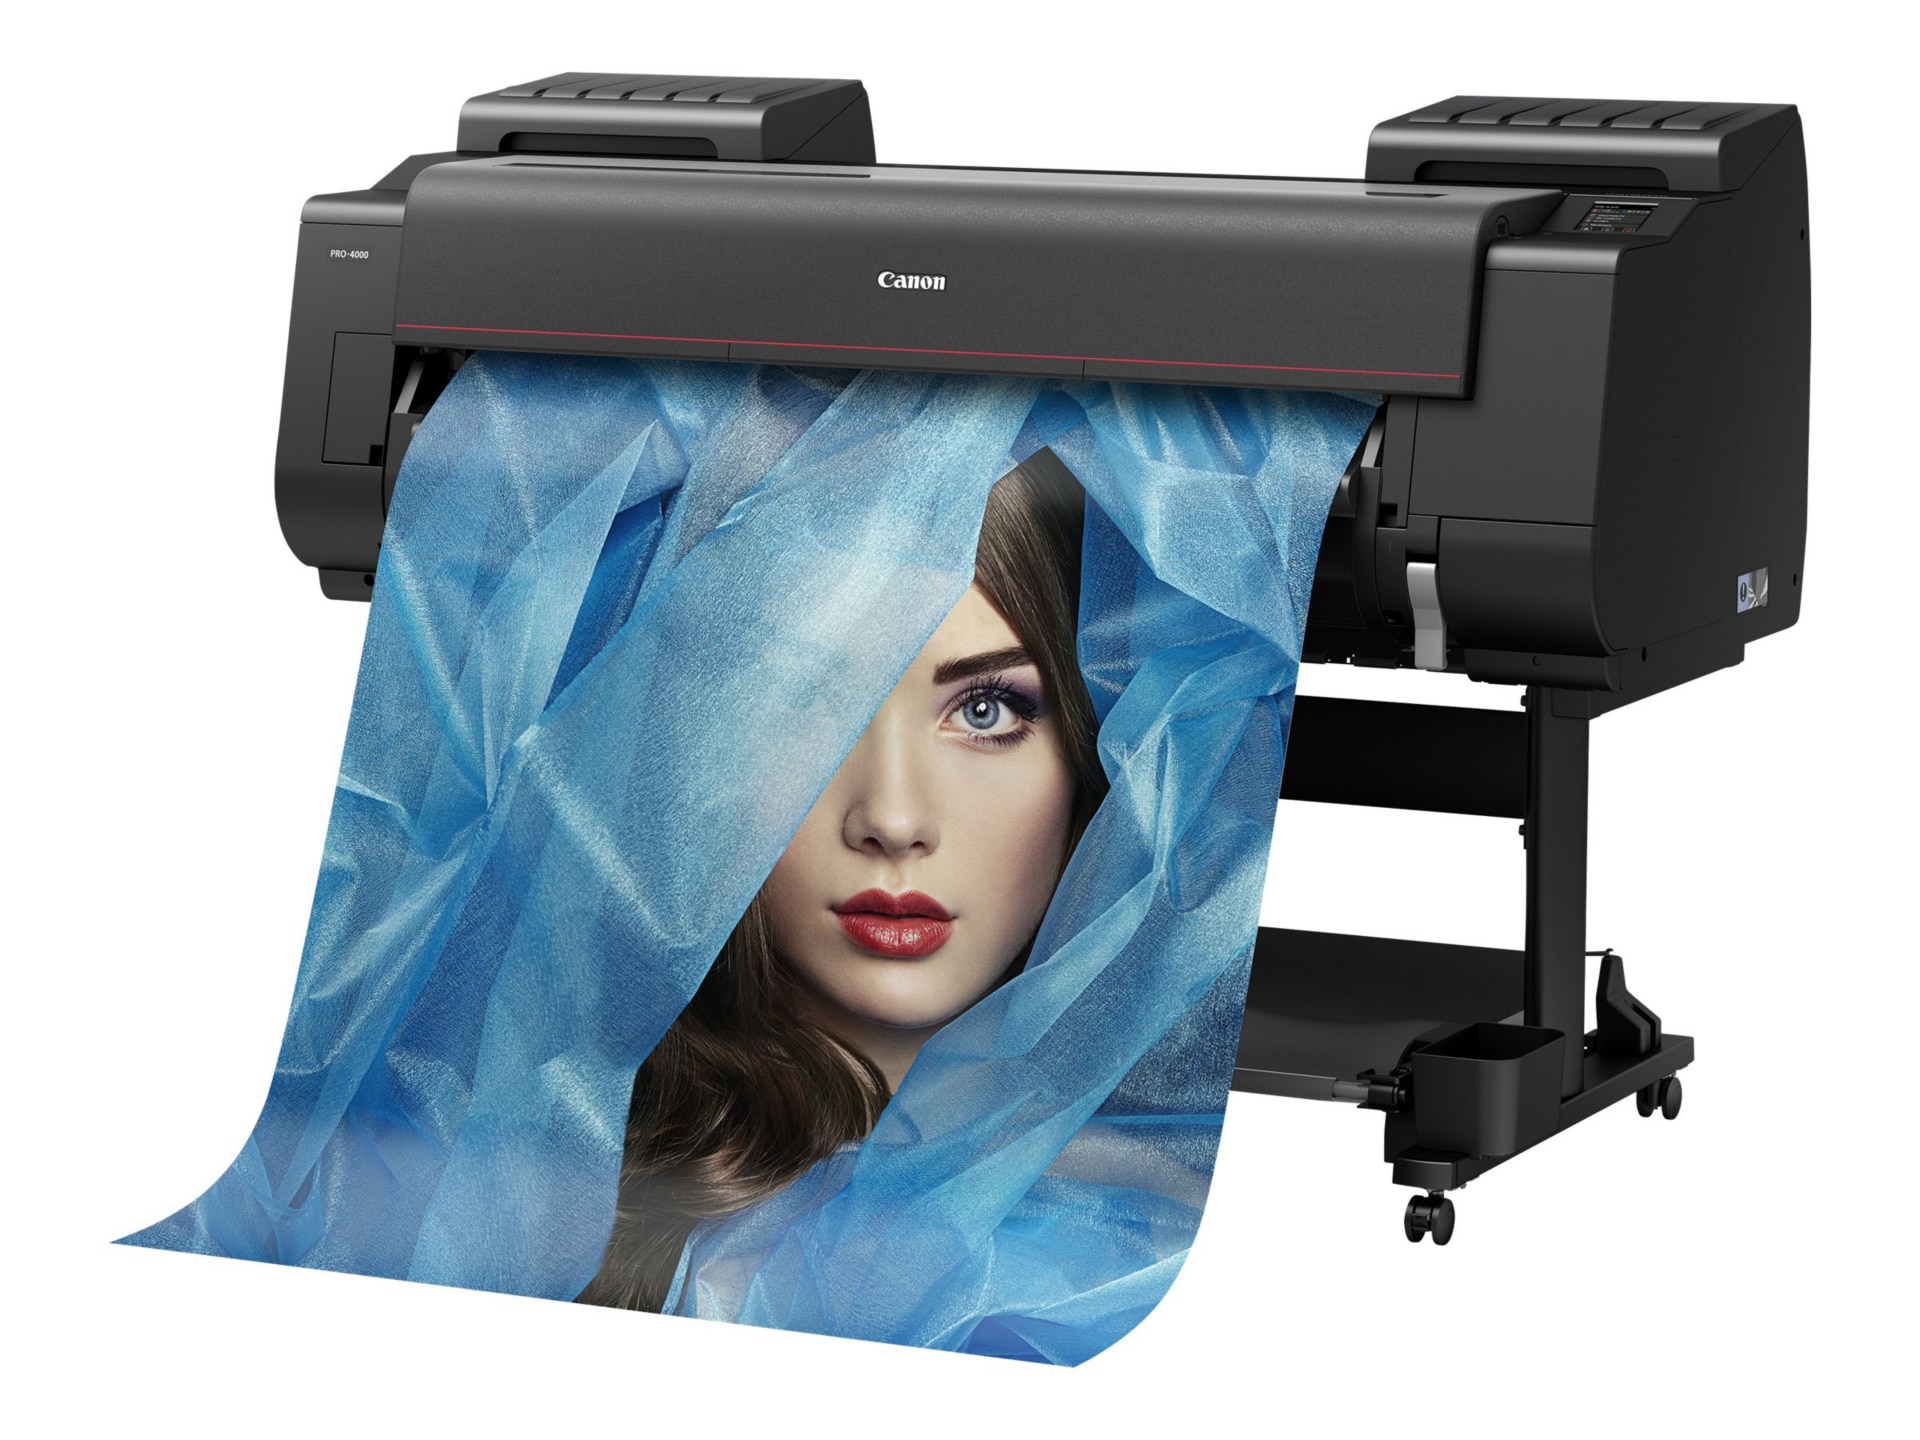 Canon imagePROGRAF PRO-4100 - large-format printer - color - ink-jet